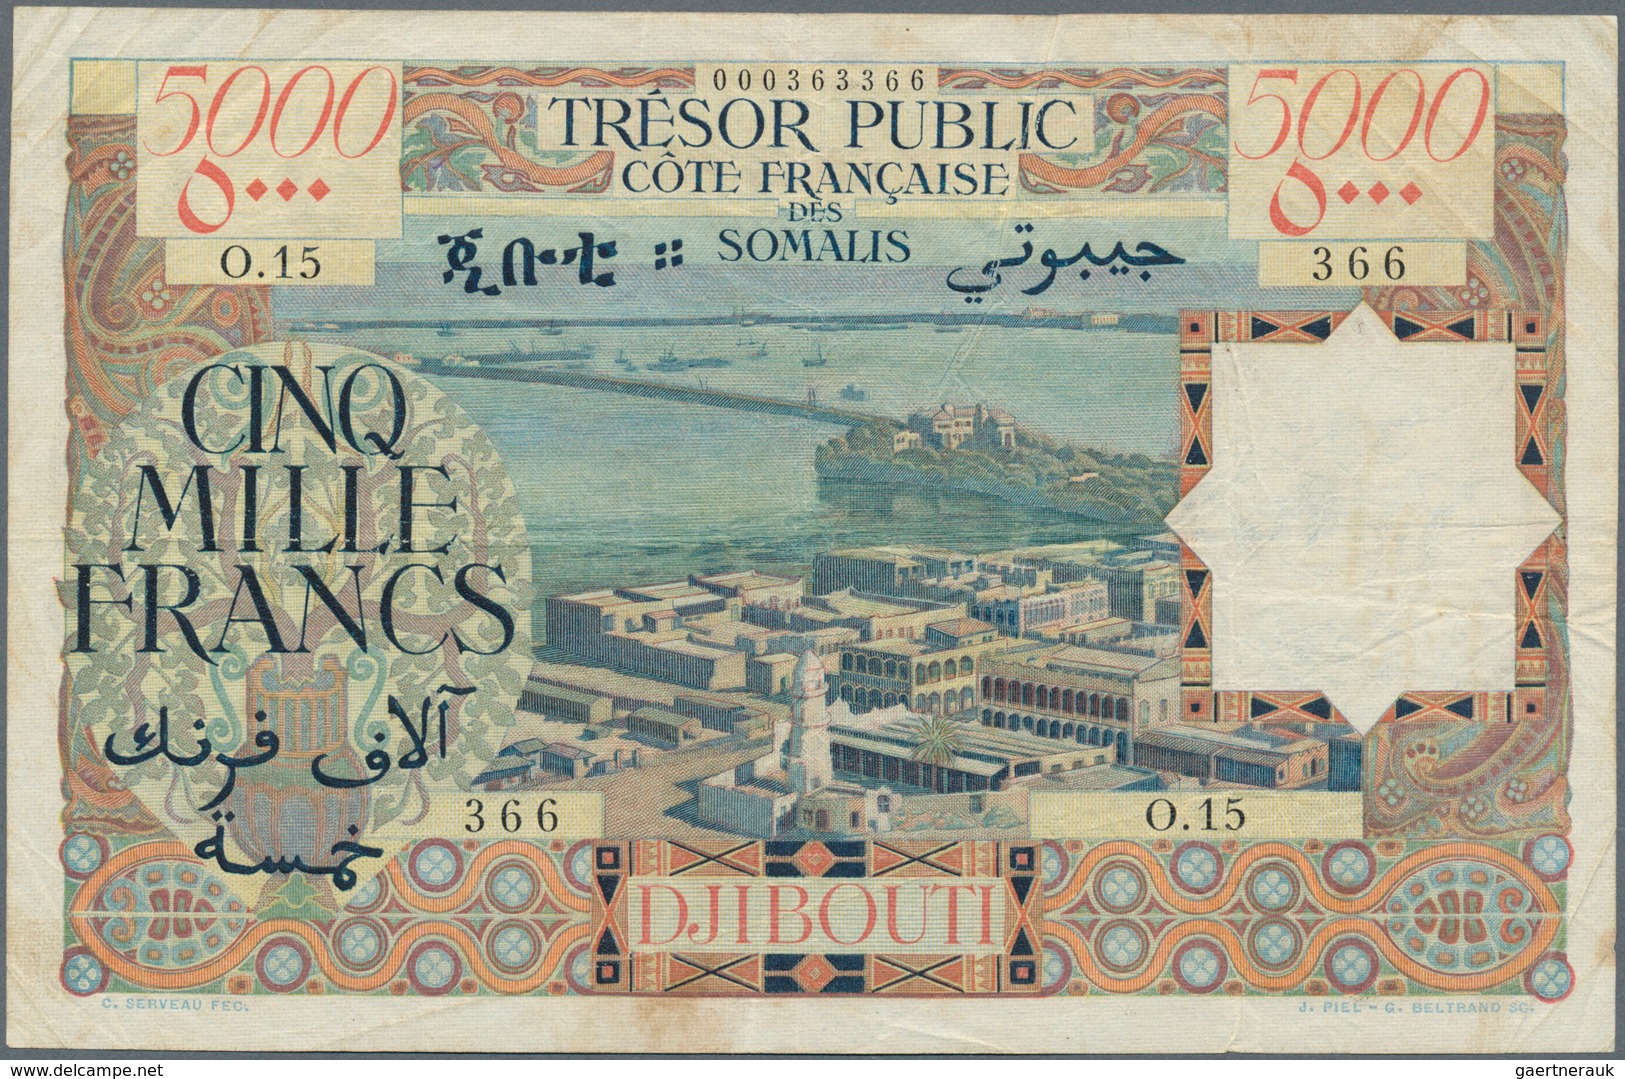 01367 Djibouti / Dschibuti: 5000 Francs ND(1952) CÔTE FRANÇAISE DES SOMALIS TRÉSOR PUBLIC P. 29, Used With - Djibouti